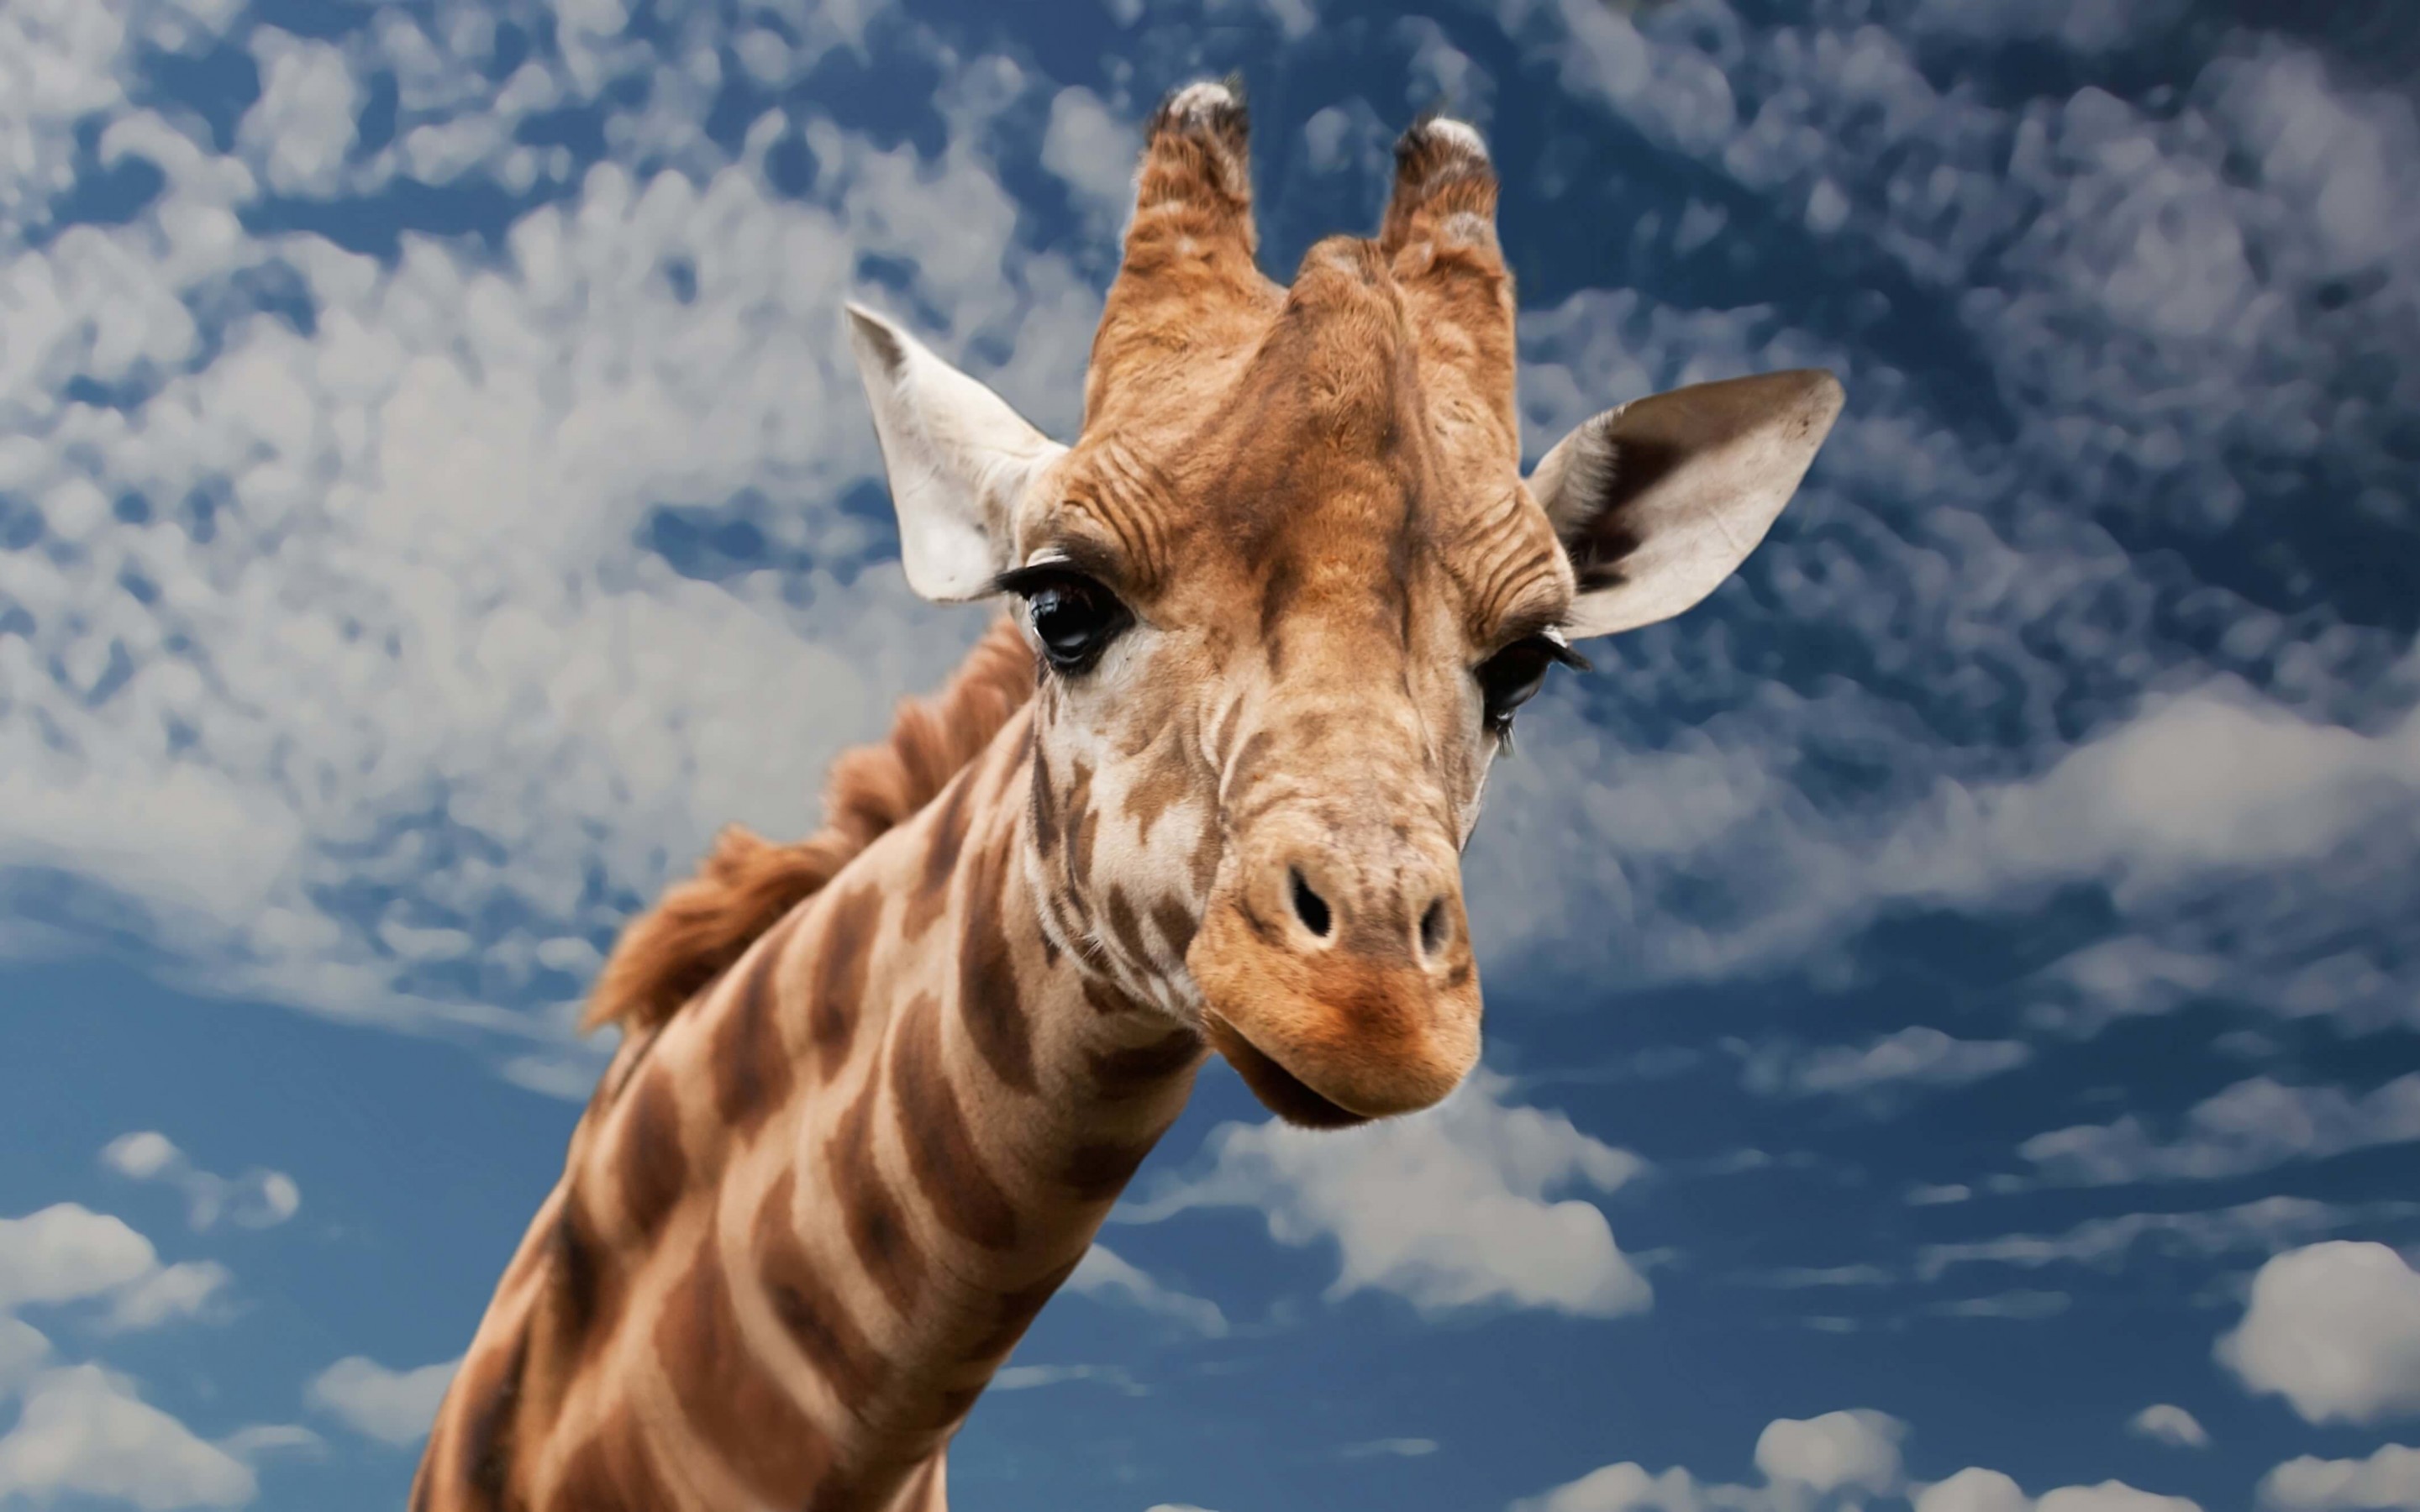 Funny Giraffe Wallpaper for Desktop 2880x1800